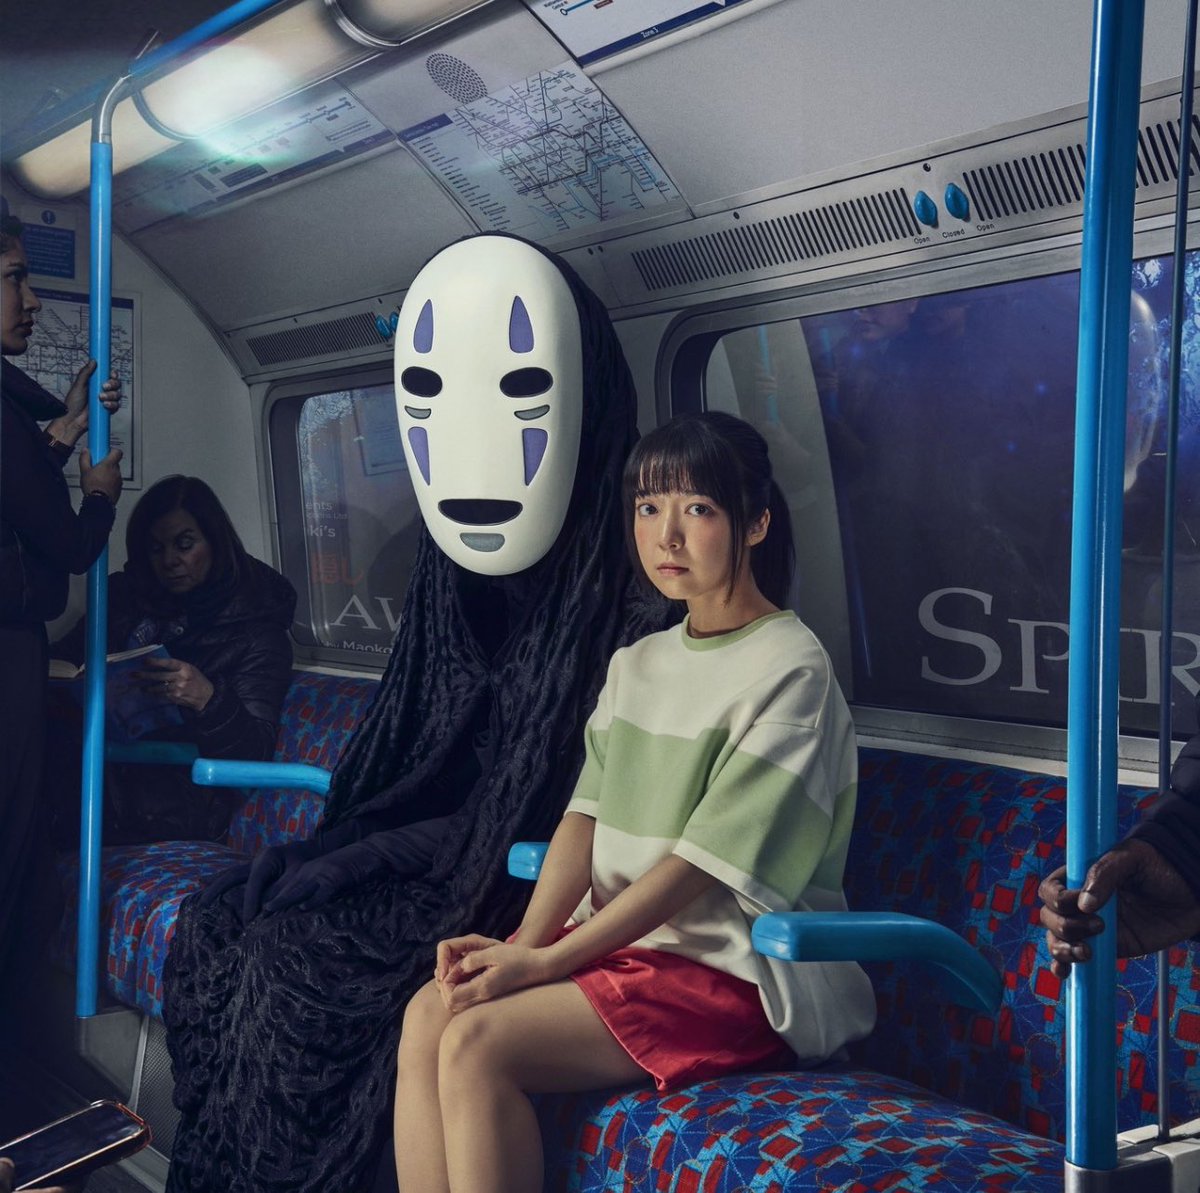 Con esta imagen la obra de Spirited Away (El Viaje de Chihiro) anuncia su llegada a Londres 😁